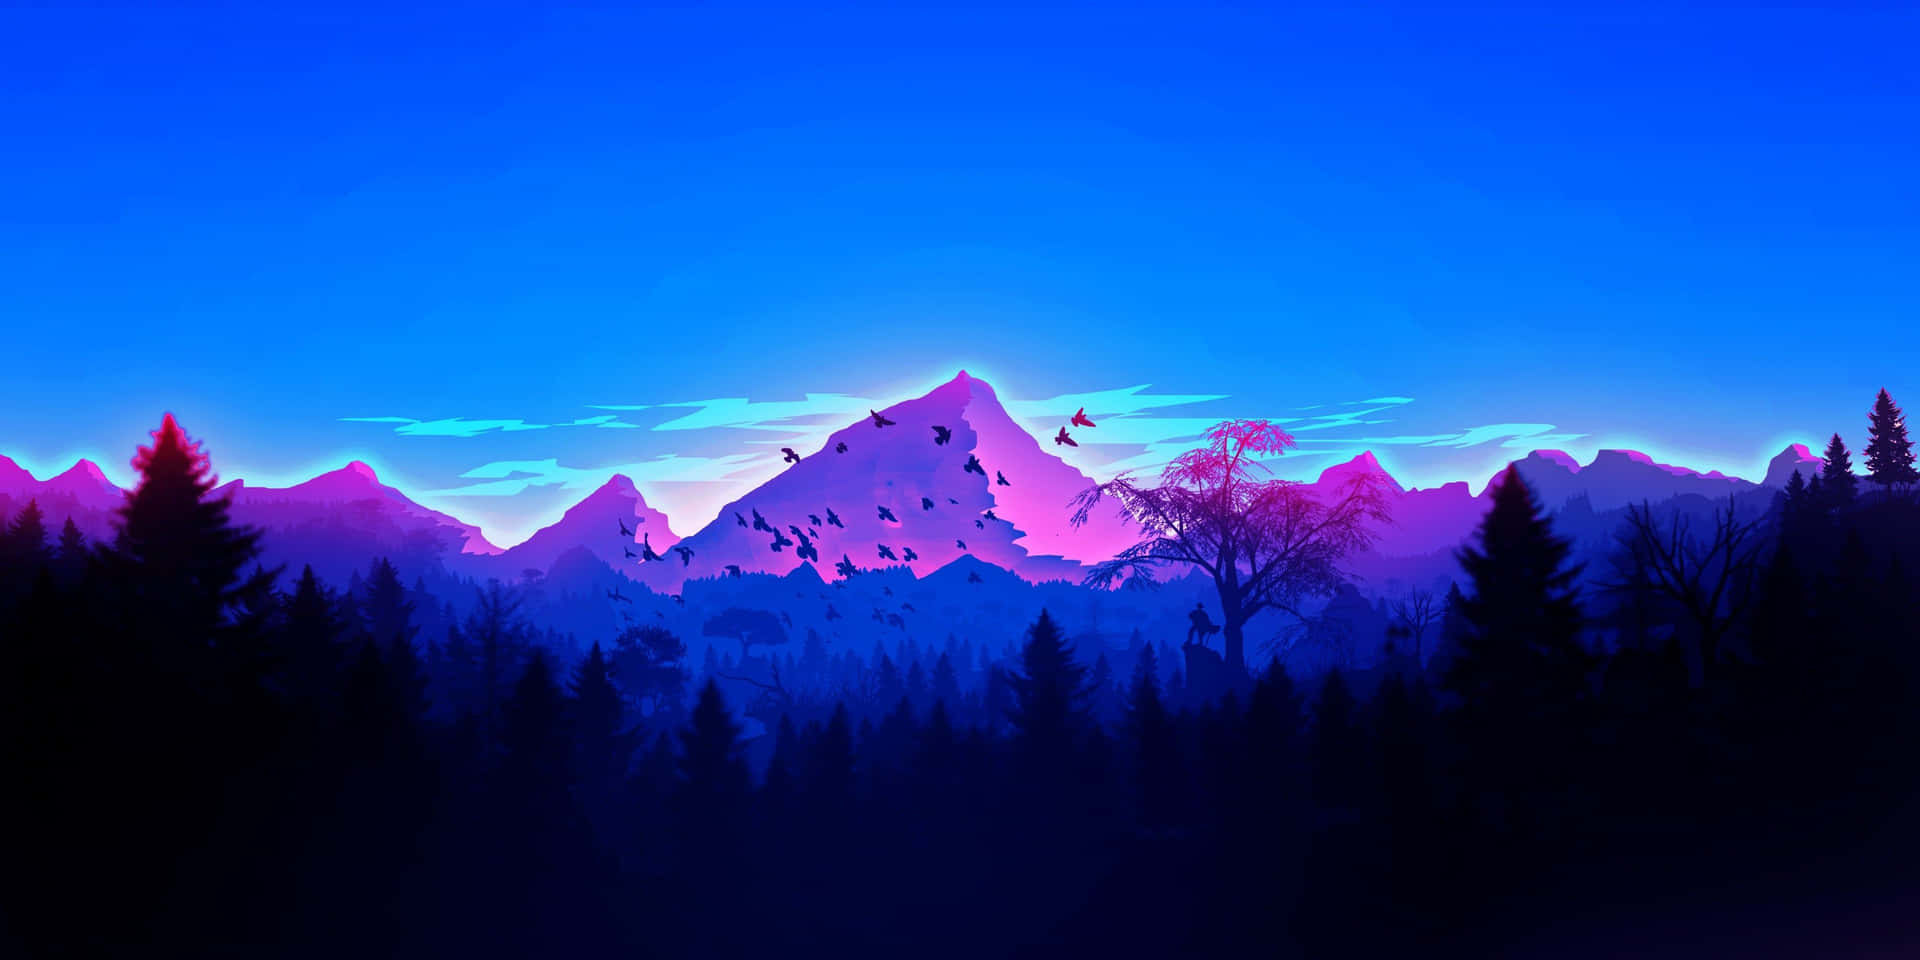 En minimalistisk bjergscene, der fremhæver enkelheden i naturen Wallpaper